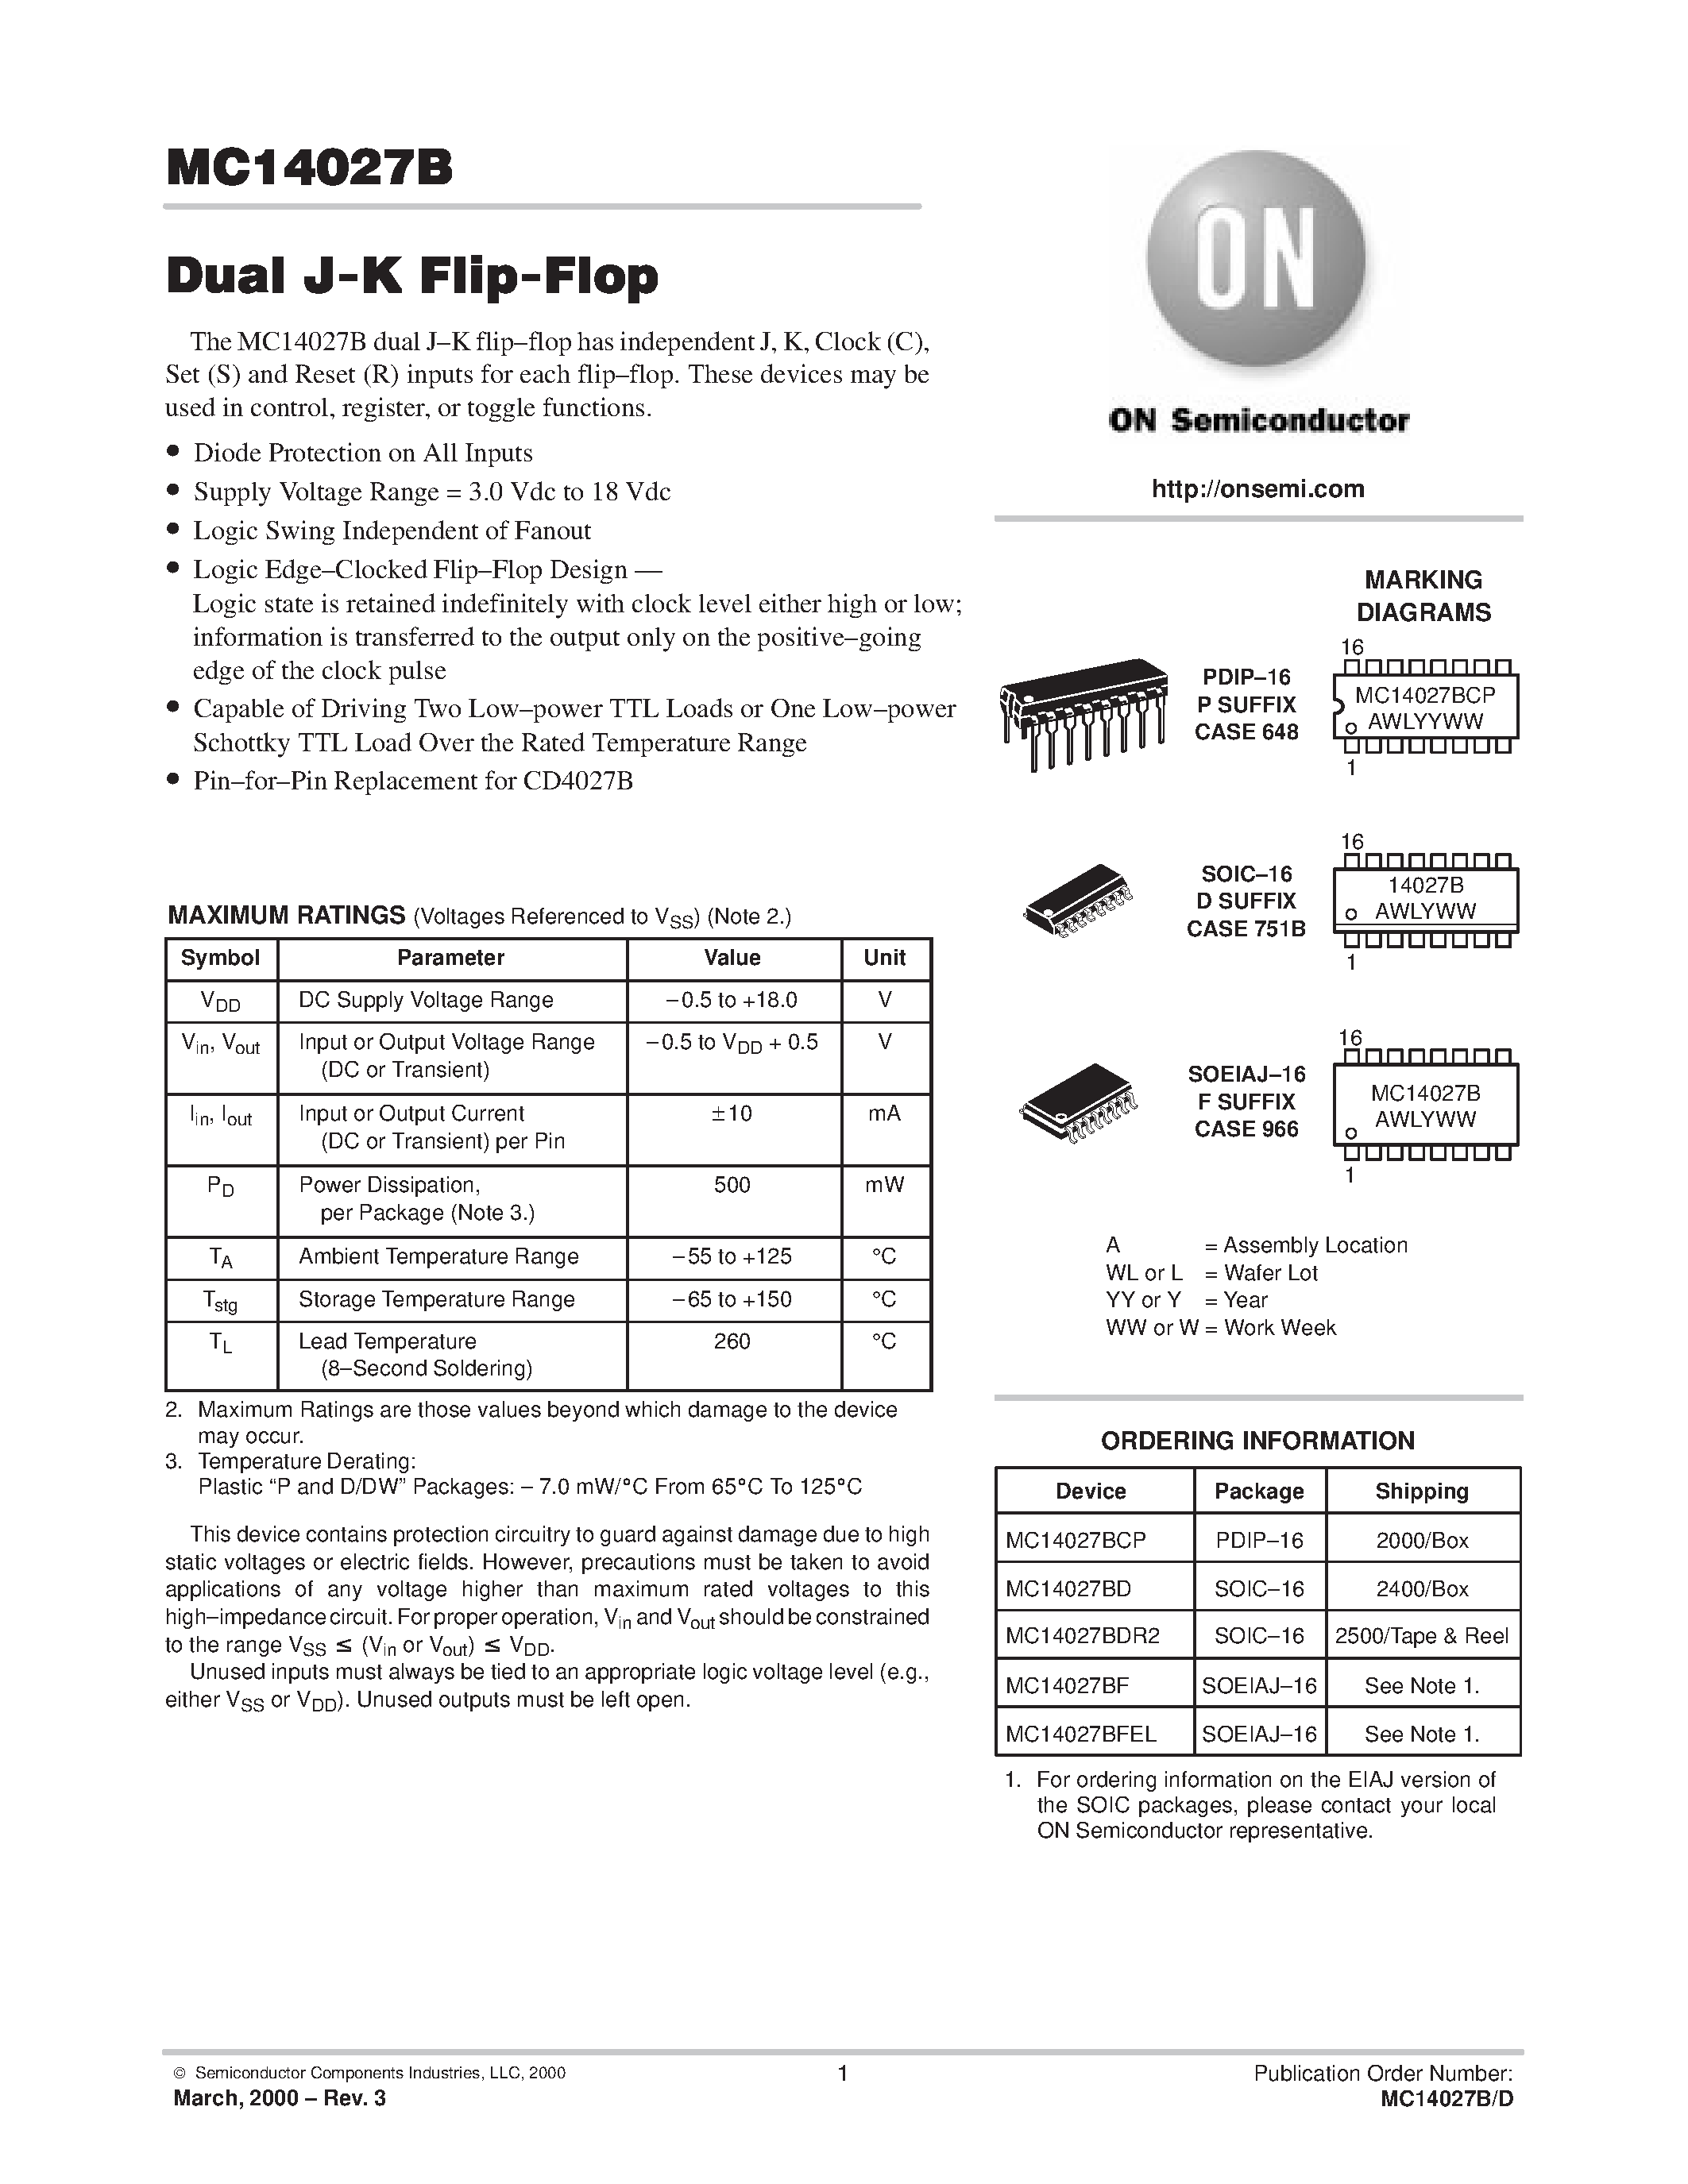 Даташит MC14027BFEL - Dual J-K Flip-Flop страница 1